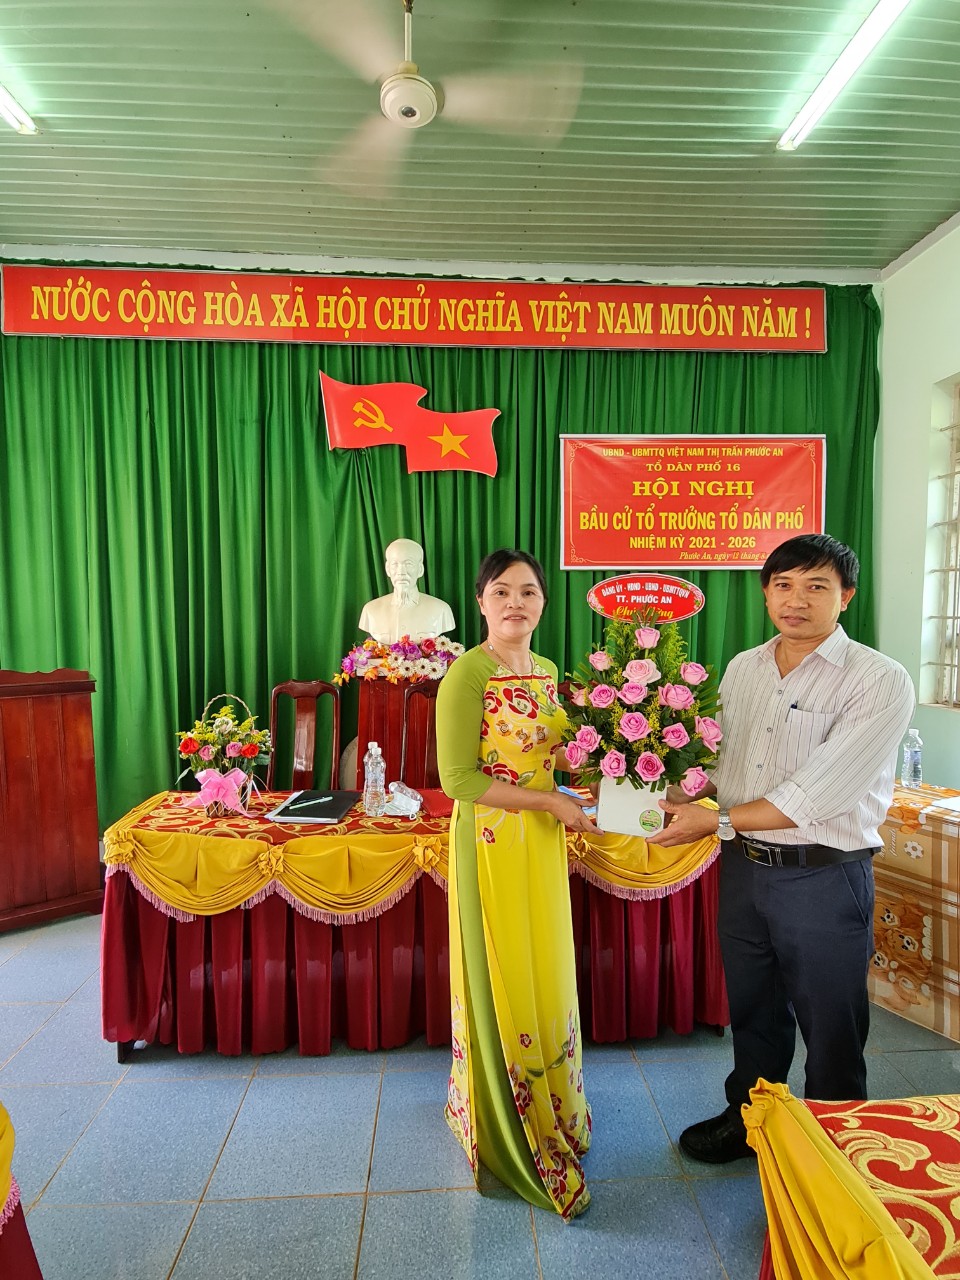 Tổ dân phố 16 thị trấn Phước an đã tổ chức Hội nghị bầu cử tổ trưởng TDP nhiệm kì 2021-2026